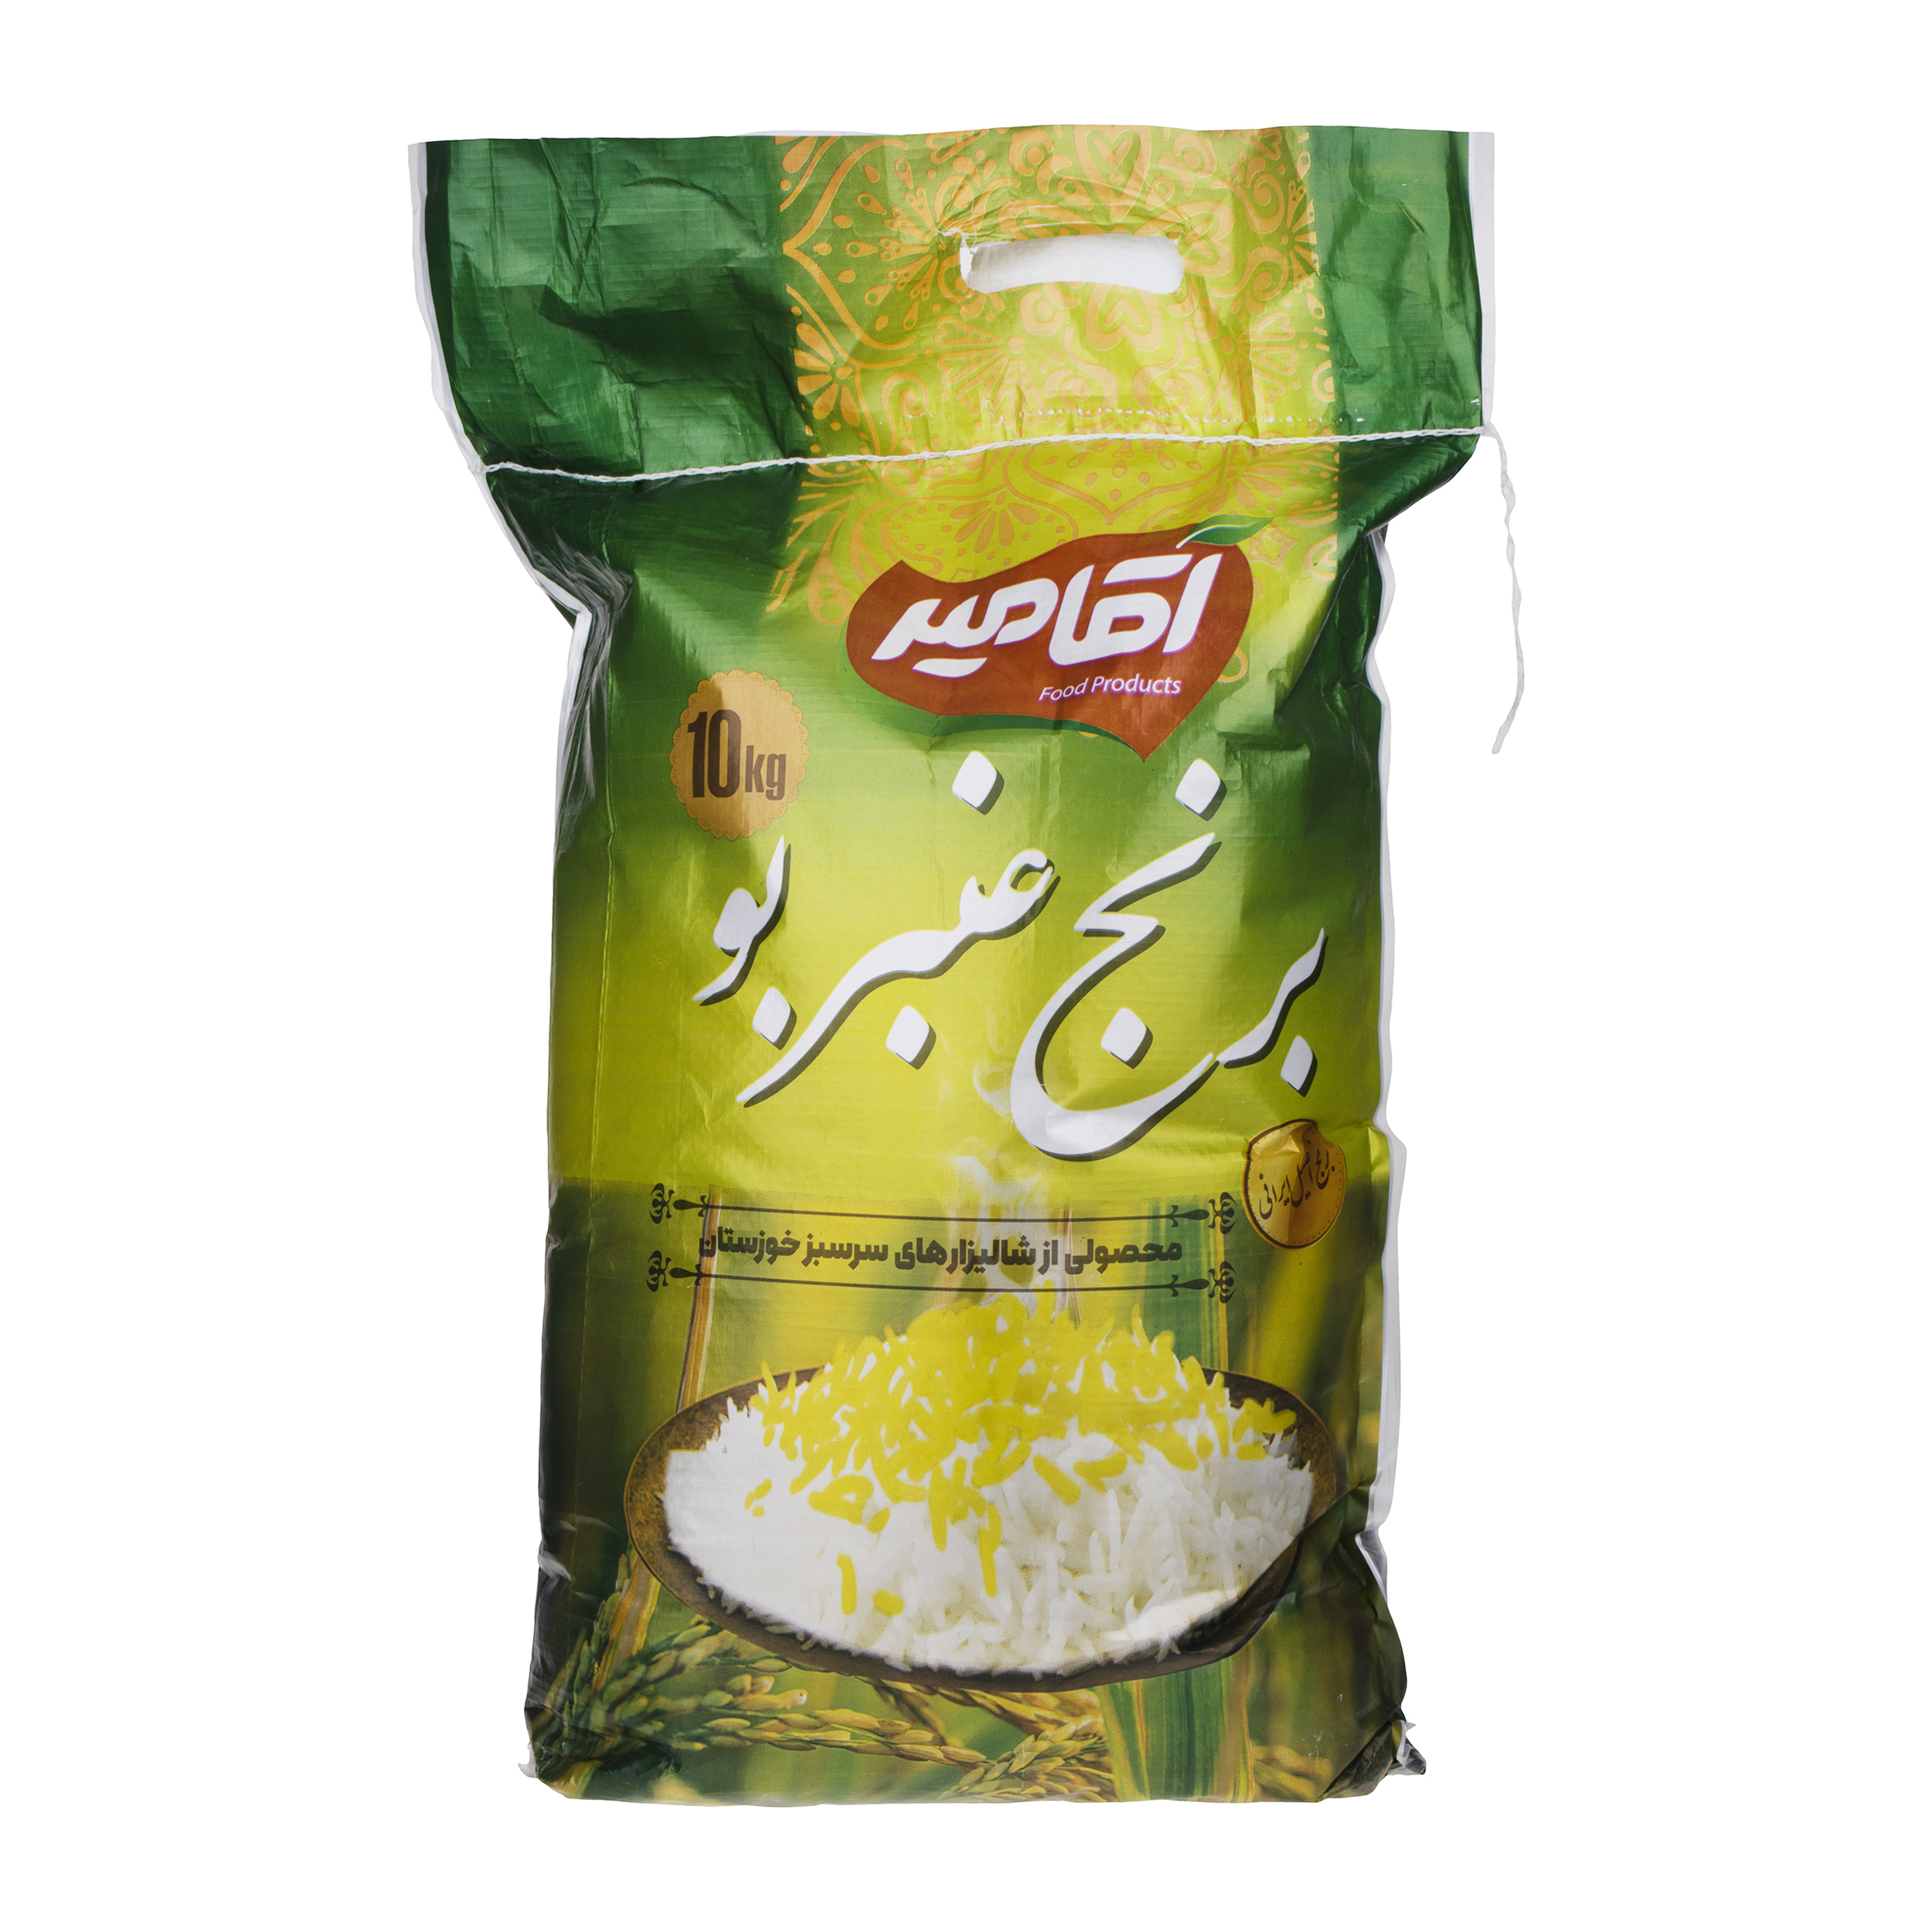 نکته خرید - قیمت روز برنج عنبربو آقامیر - 10 کیلوگرم خرید